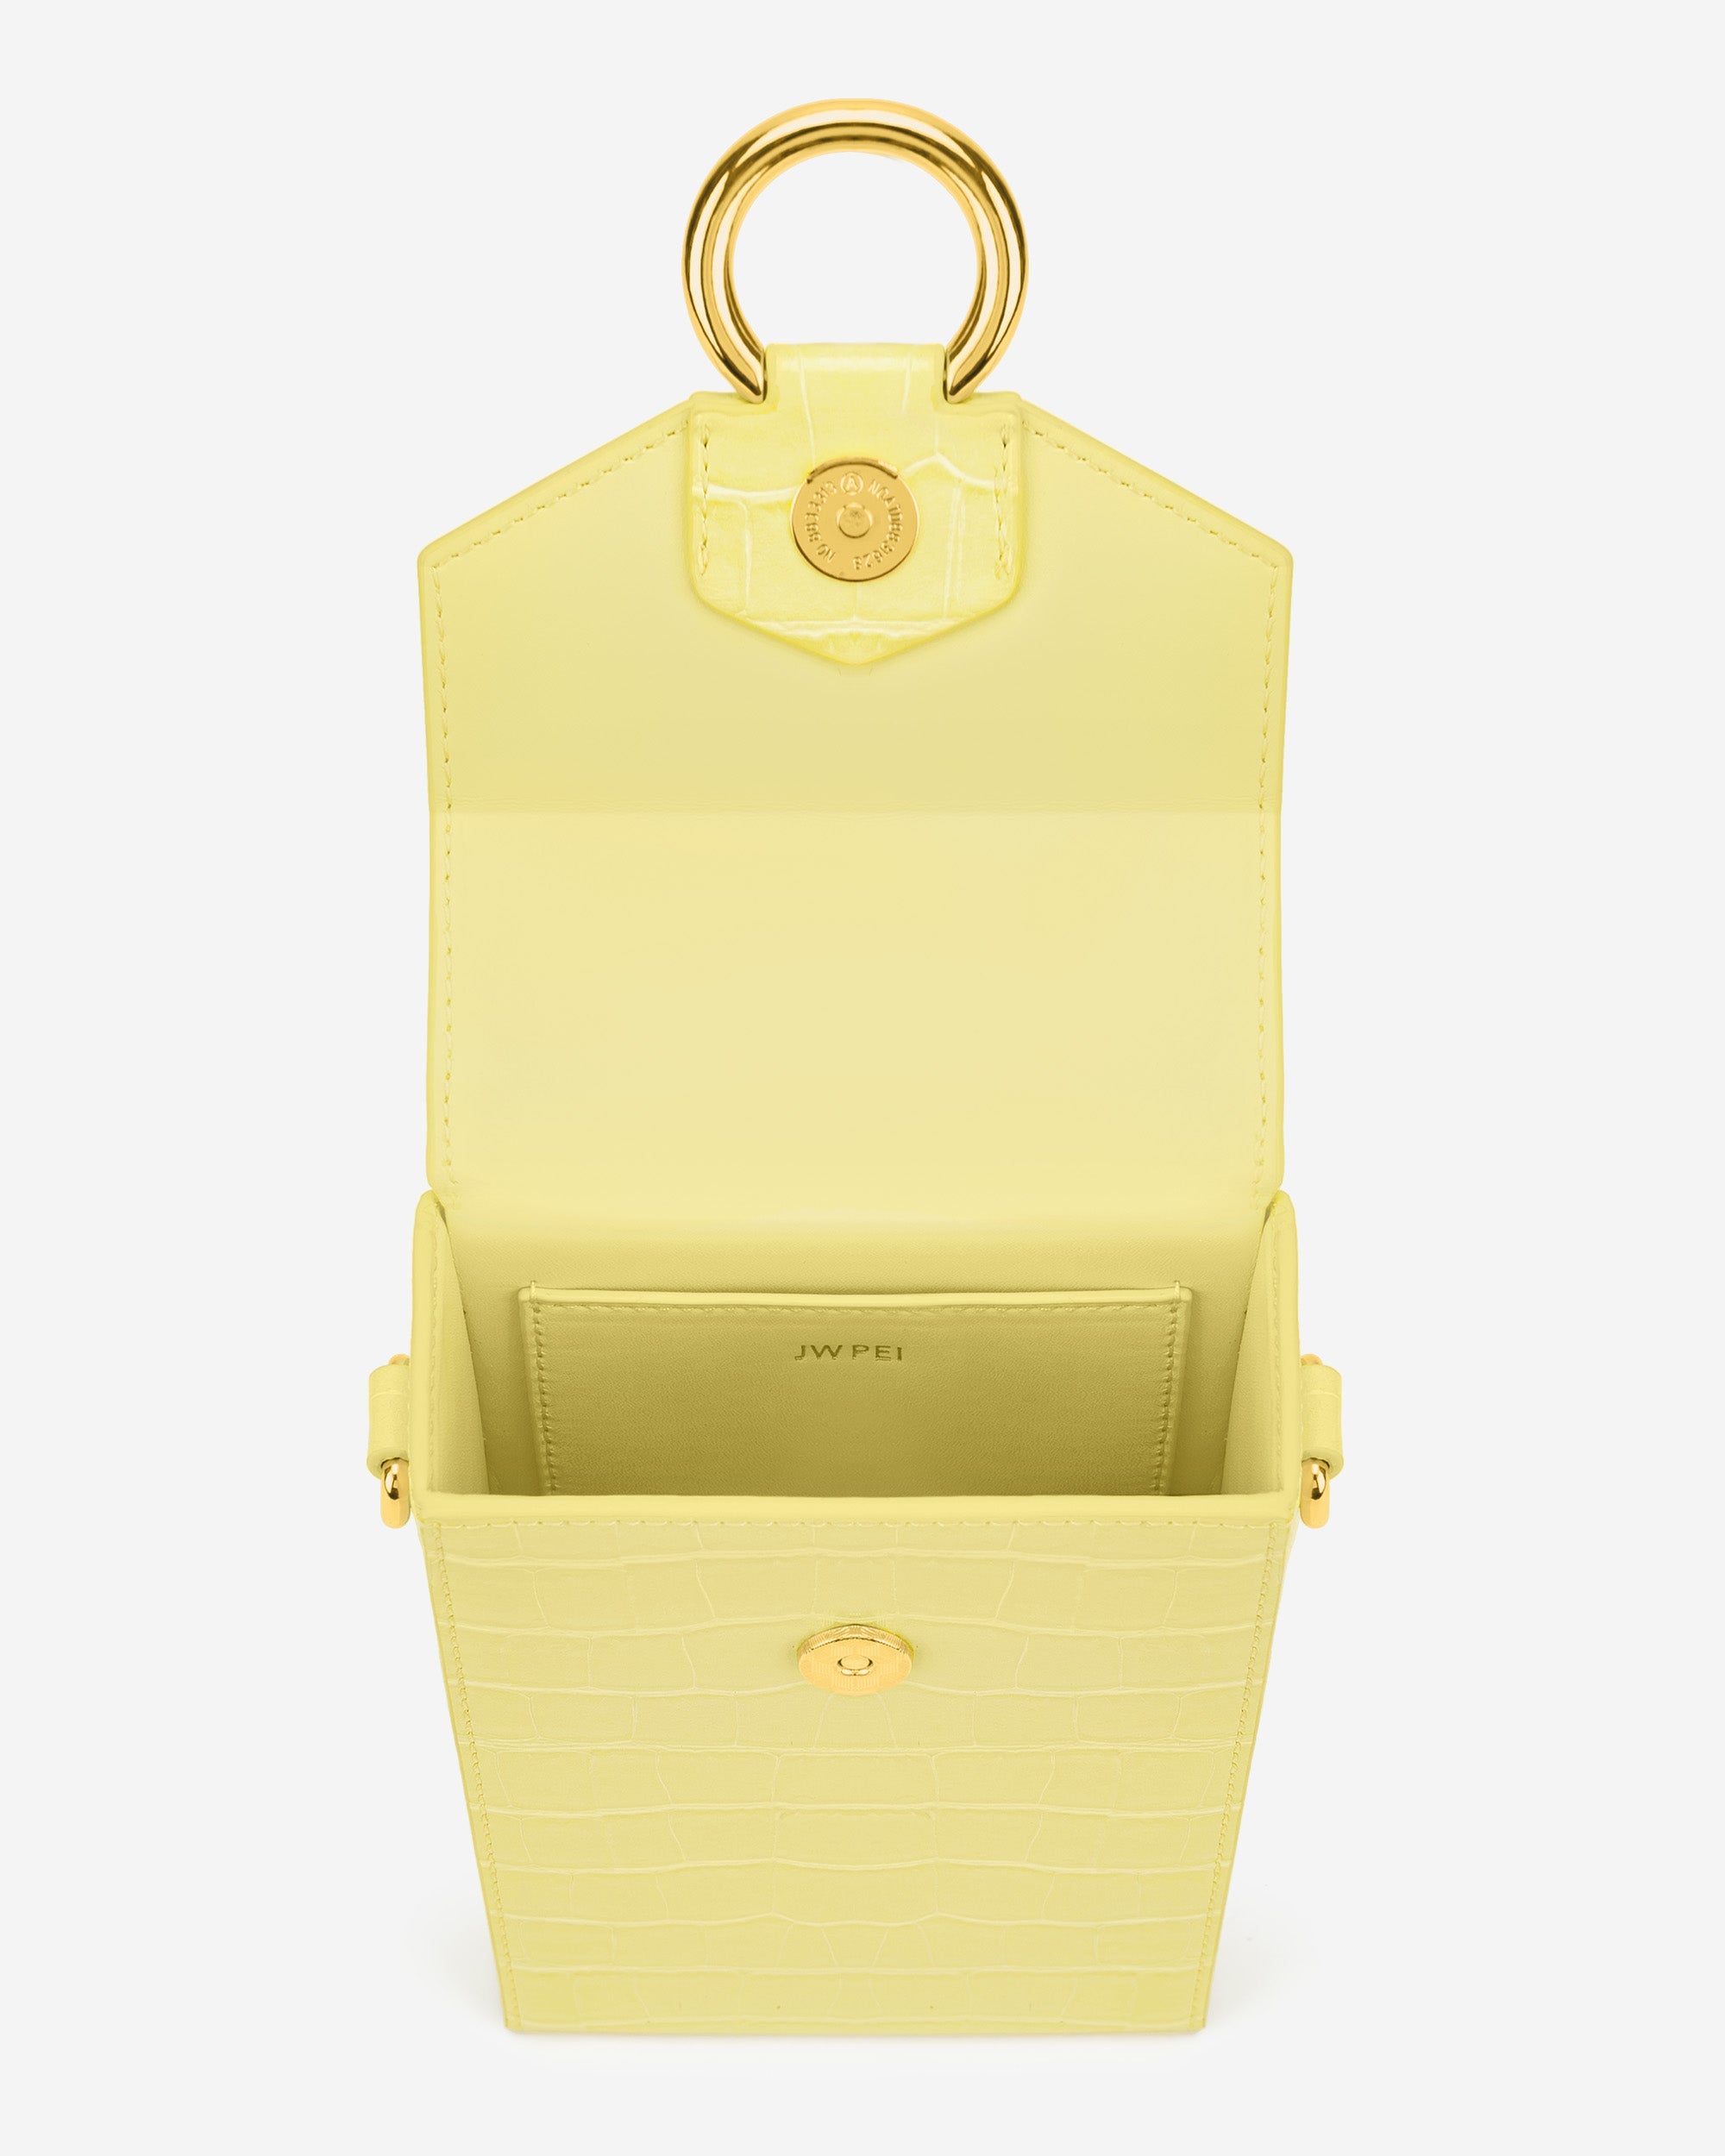 Lola 鏈條手機包 - 淺黃色鱷魚紋